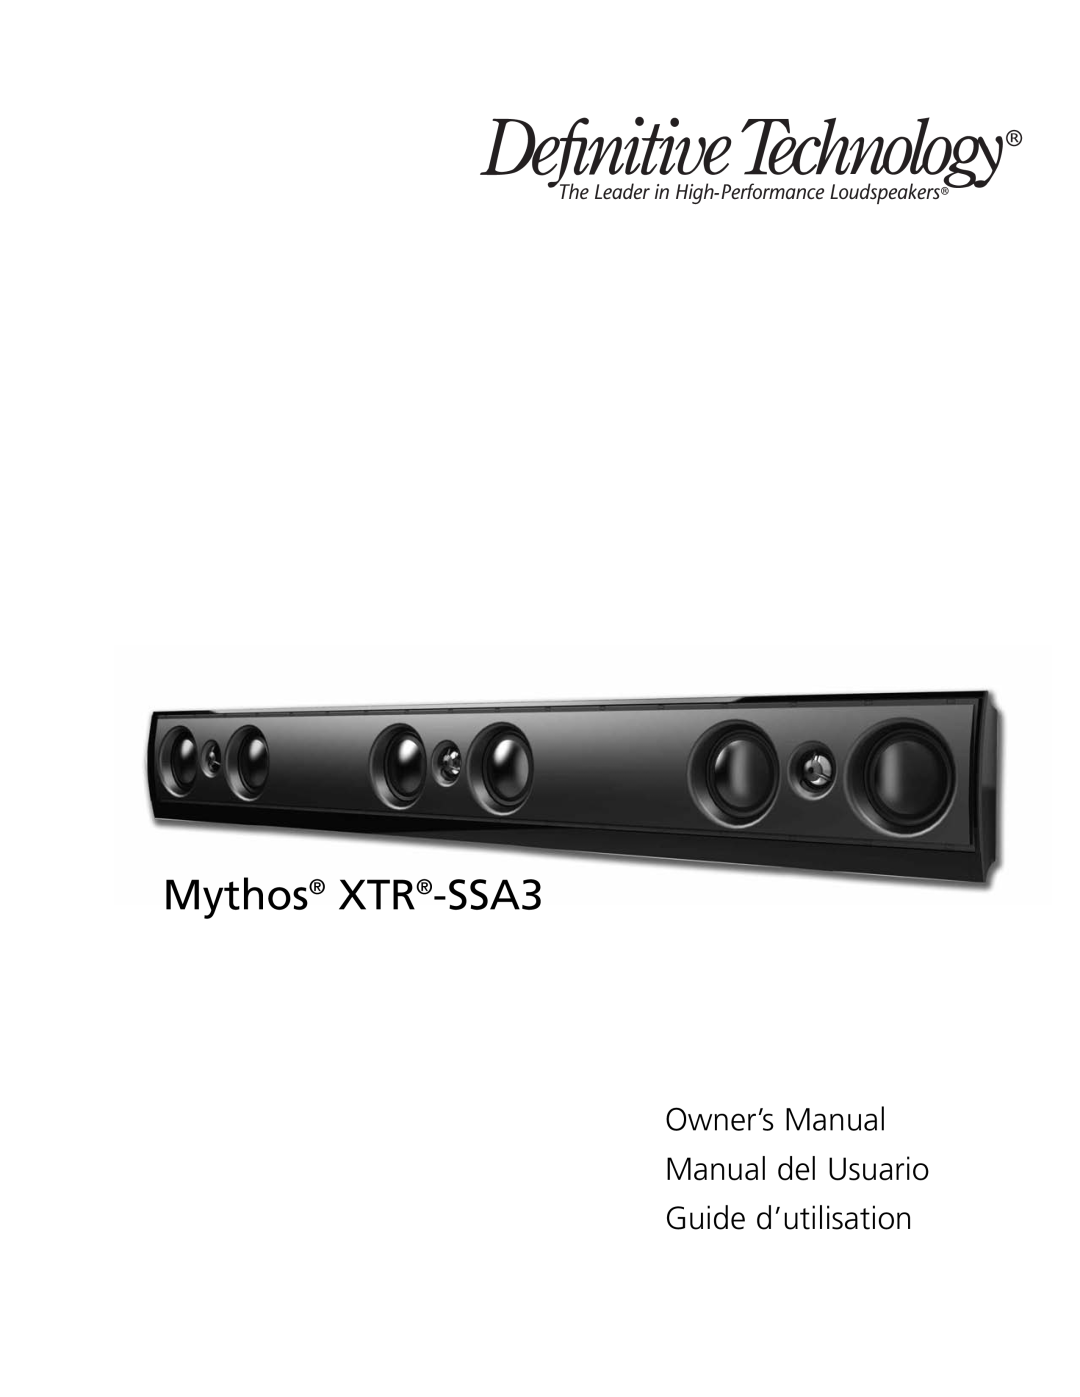 Definitive Technology owner manual Mythos XTR-SSA3, Guide d’utilisation 